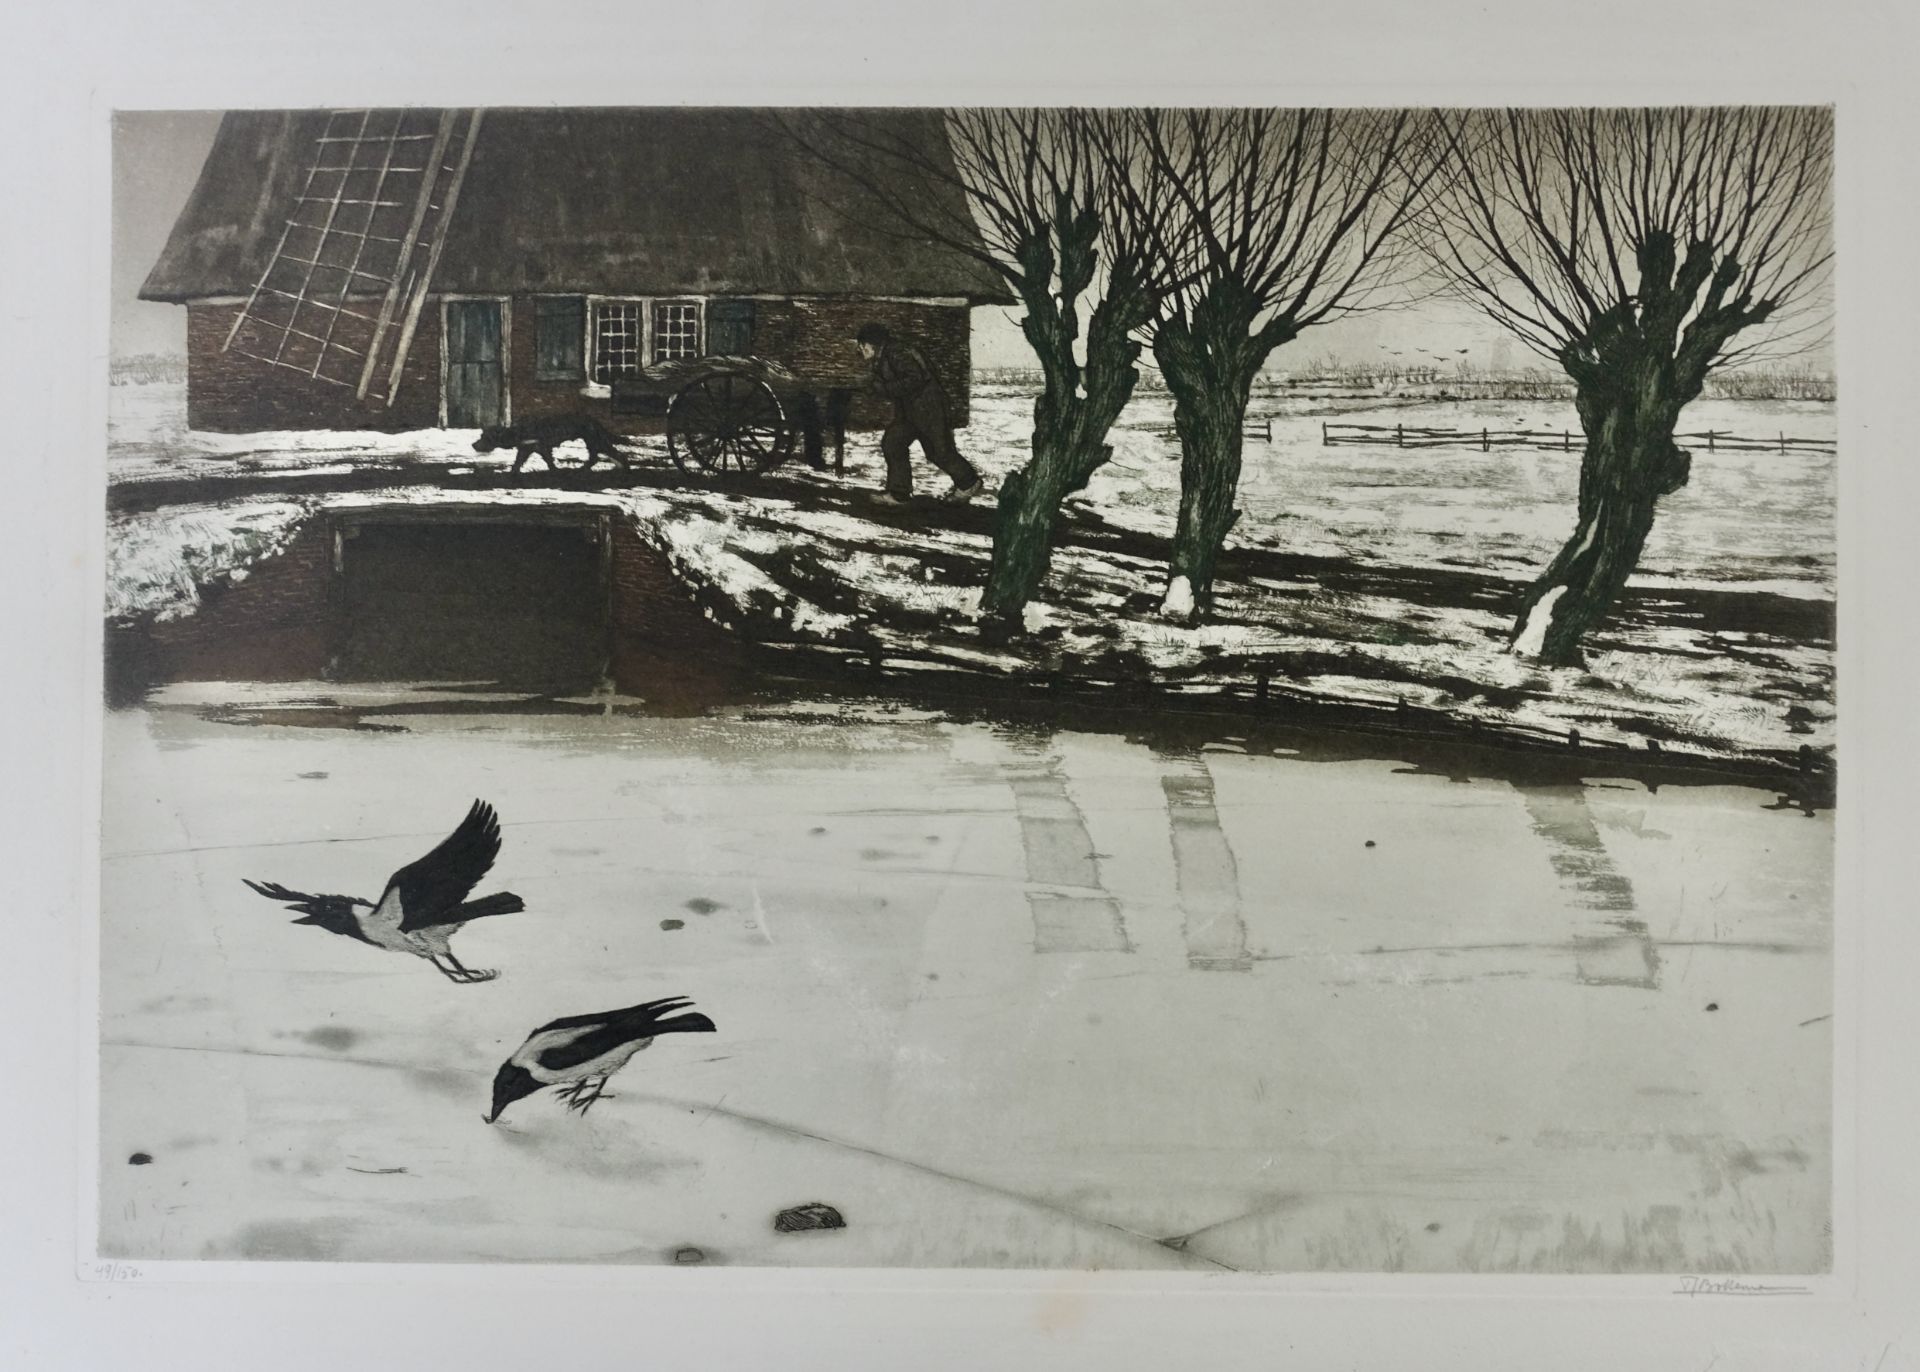 BOTTEMA, Tjeerd (1884-1978). ("Molen in de winter"). N.d. Colour etching and aquatint